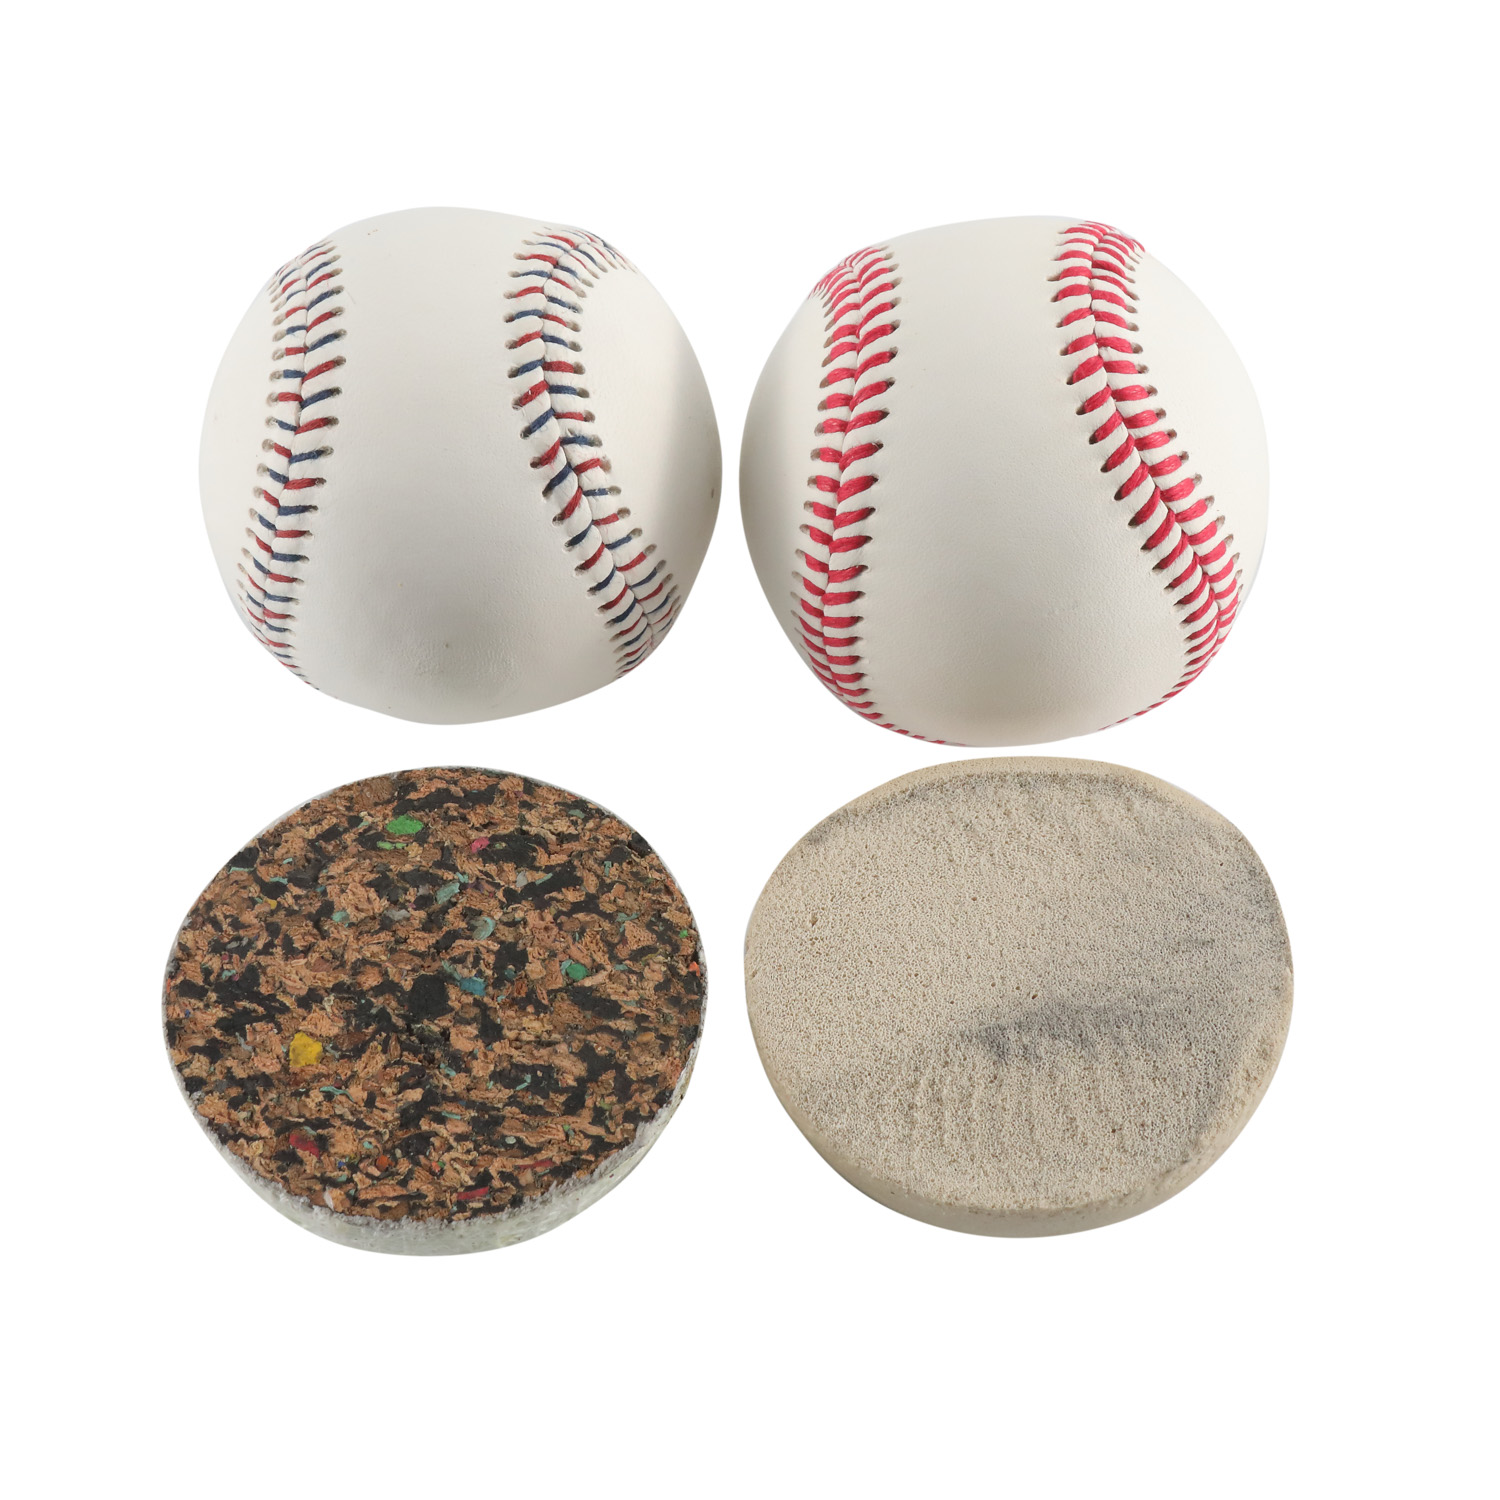 9 "cubierta de cuero de grano completo de cuero de vaca Major Little League College oficial juego profesional pelota de béisbol de cuero